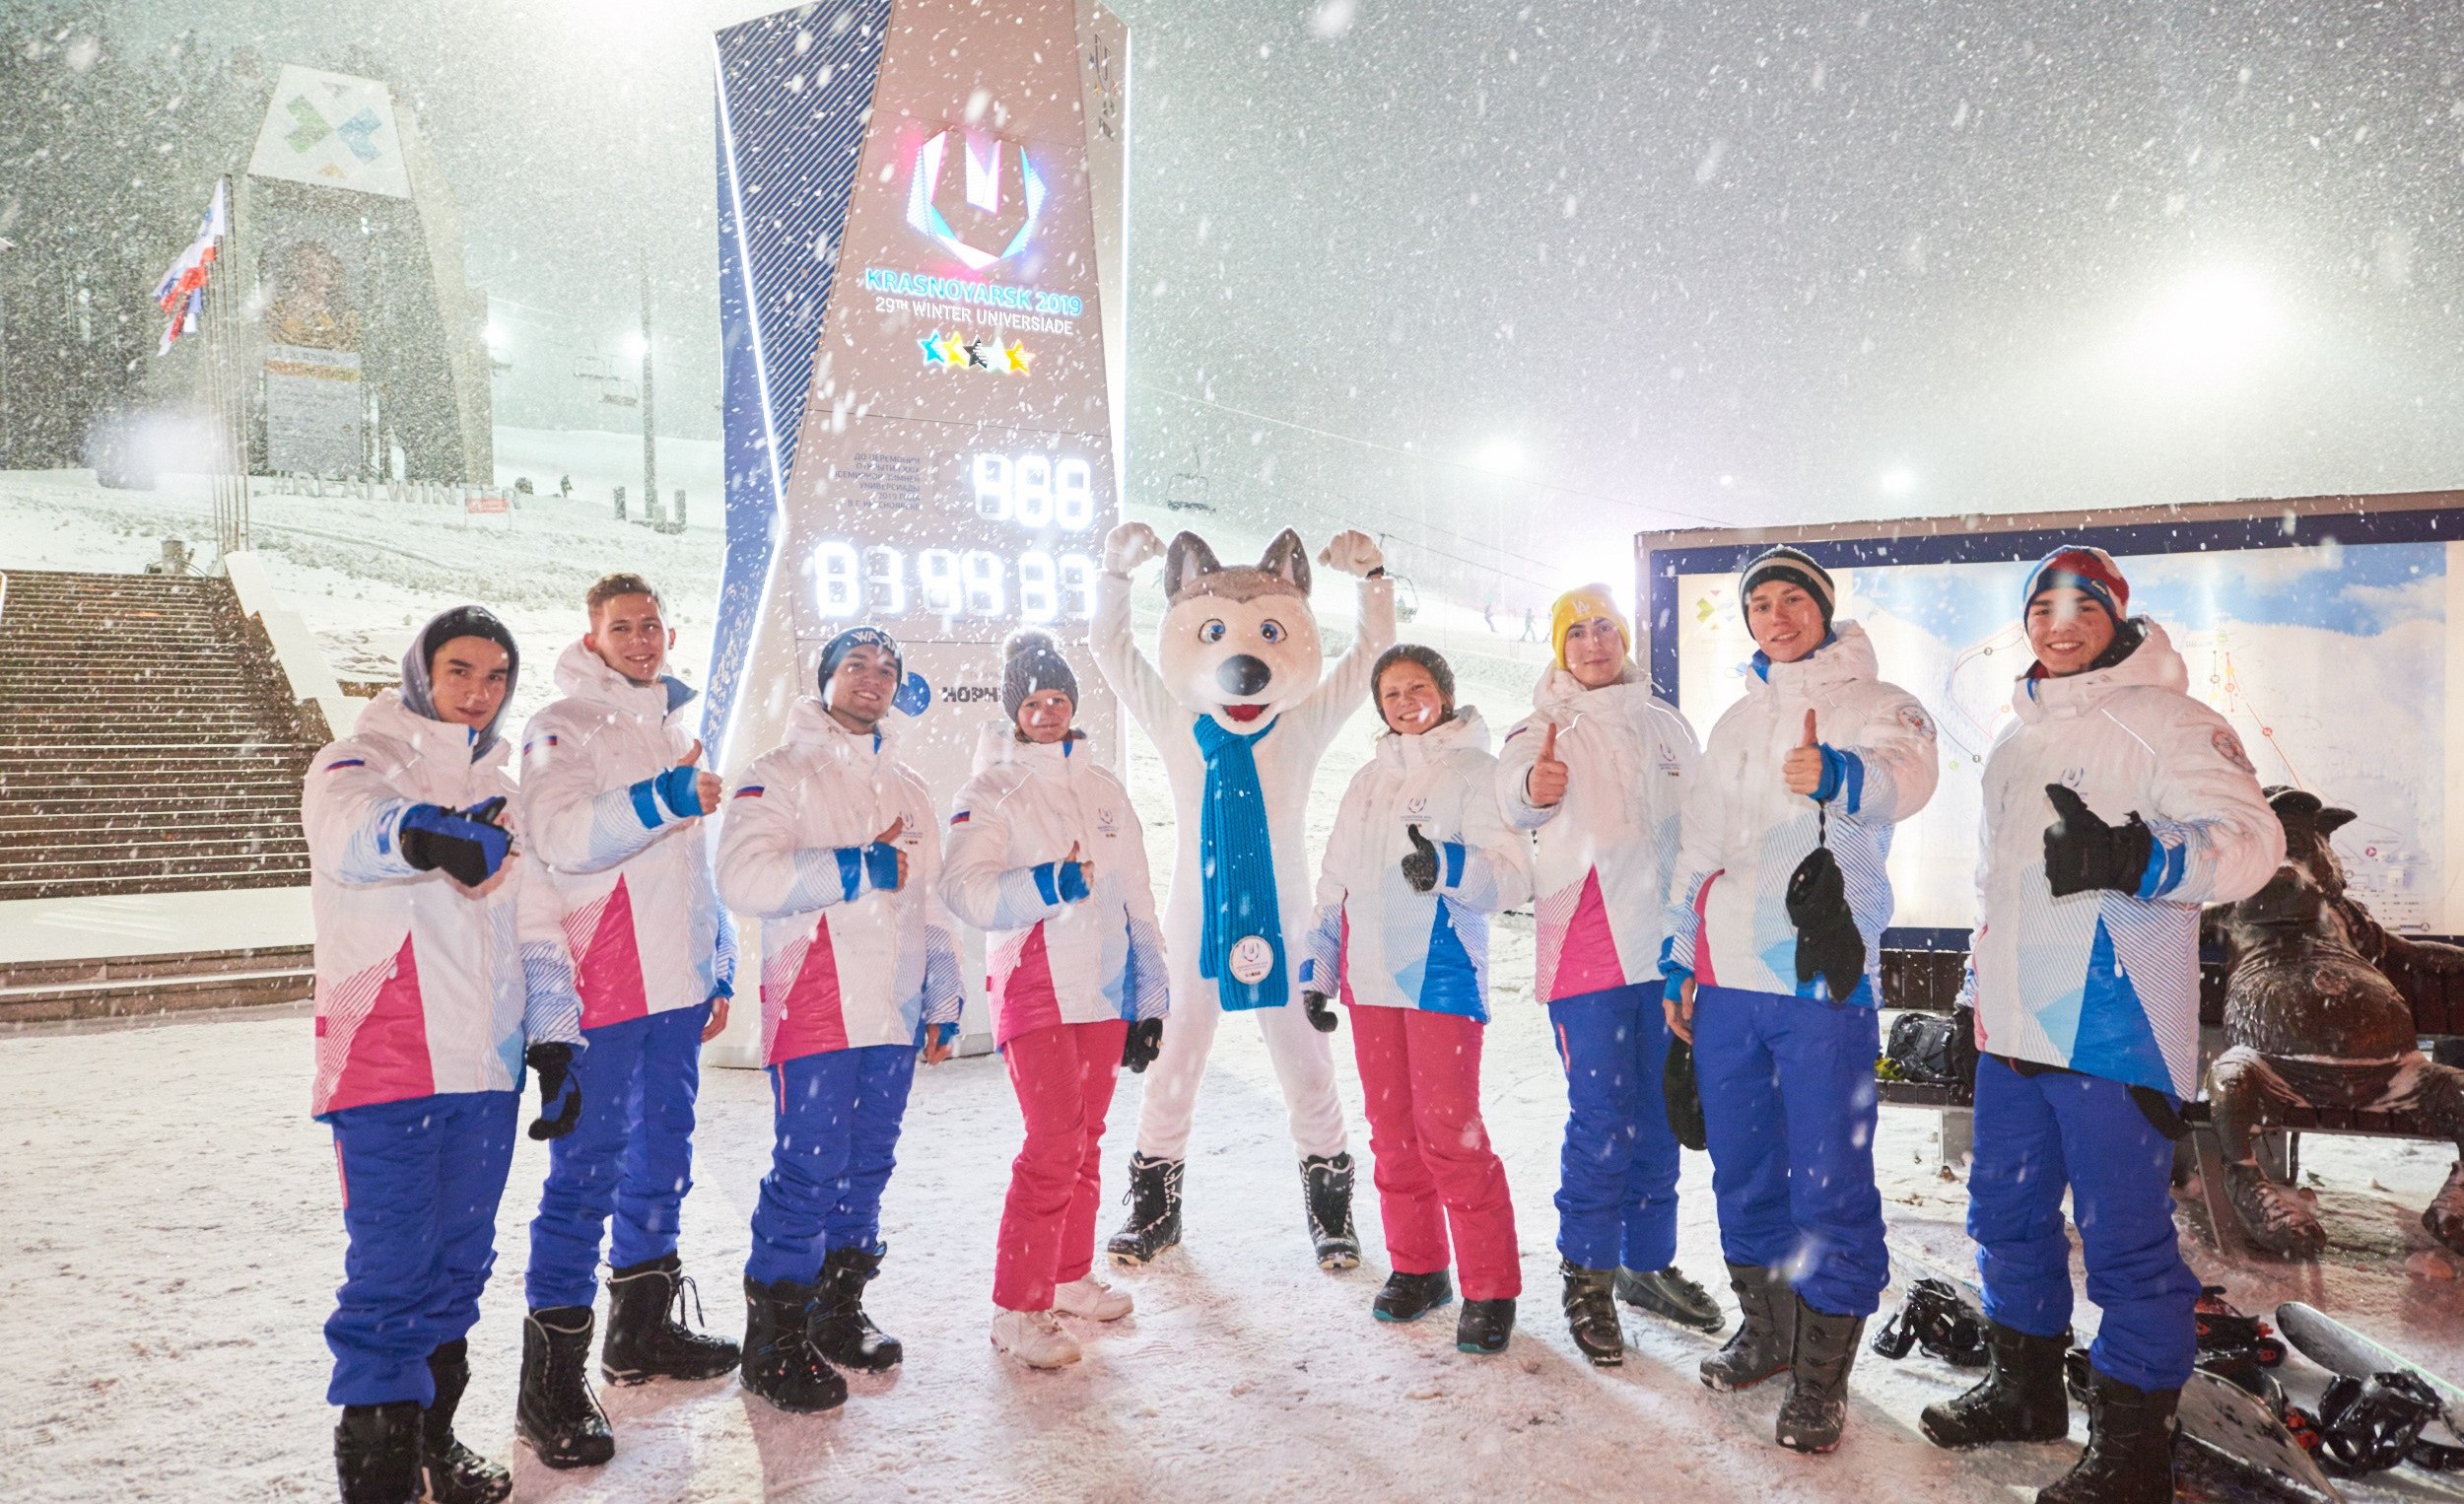 Партнеры приглашают на всемирную зимнюю универсиаду 2019 года, которое состоится в марте в г. Красноярске.